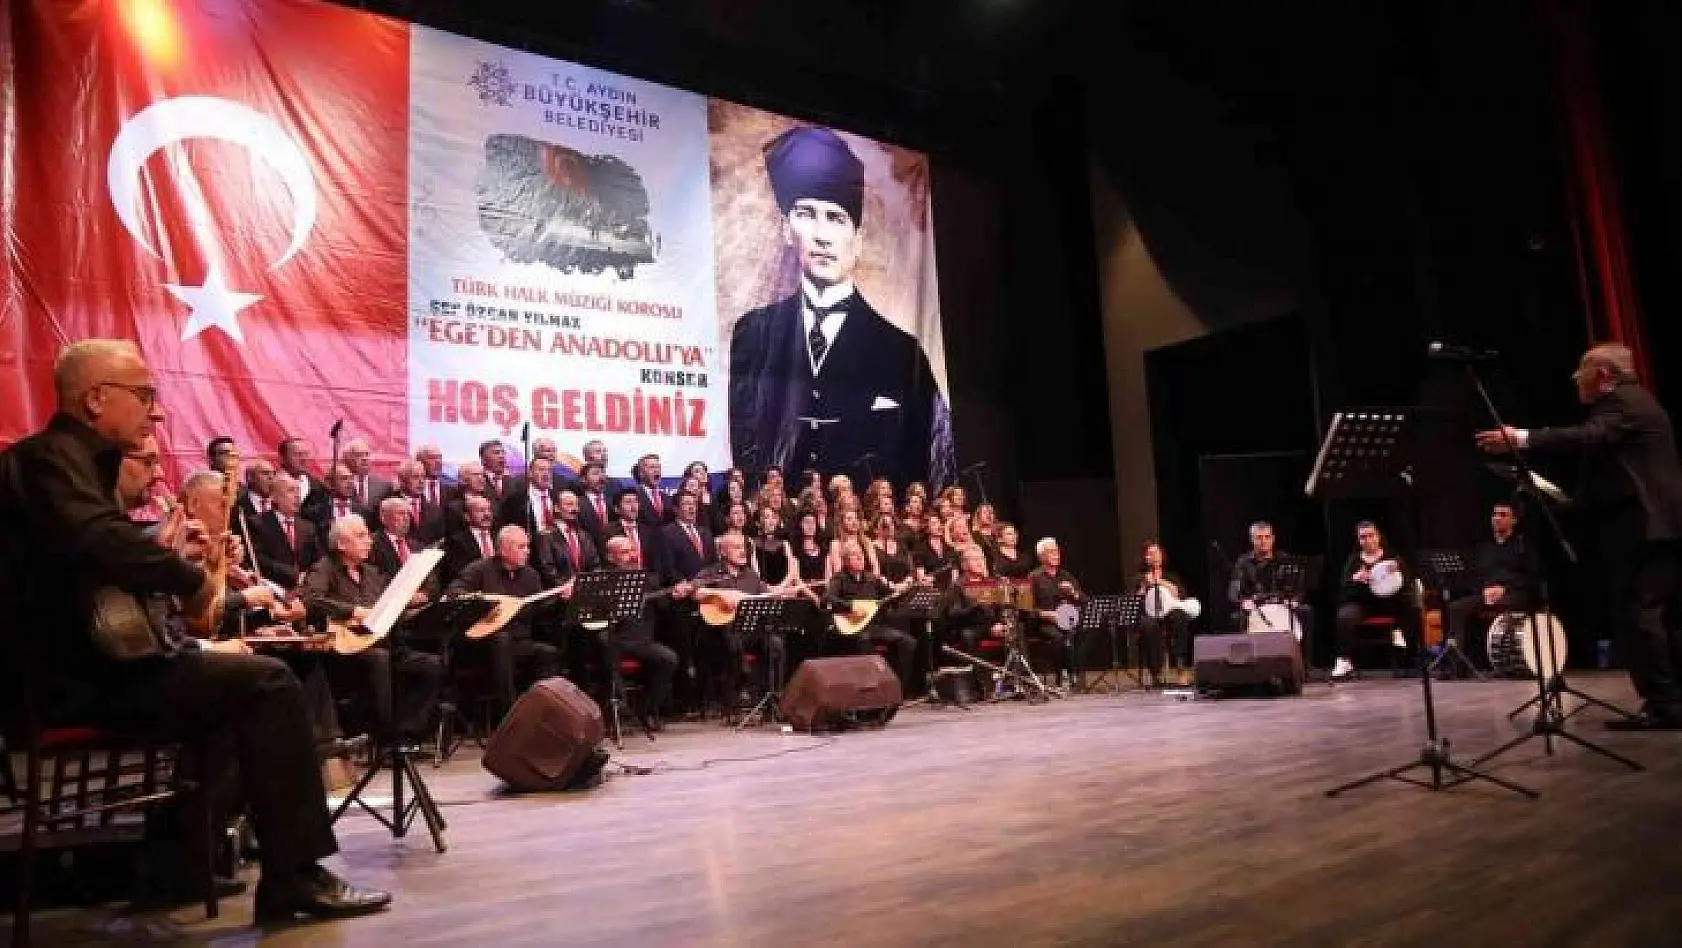 Aydın Büyükşehir Belediyesi Ege'den Anadolu'ya konseri düzenlendi